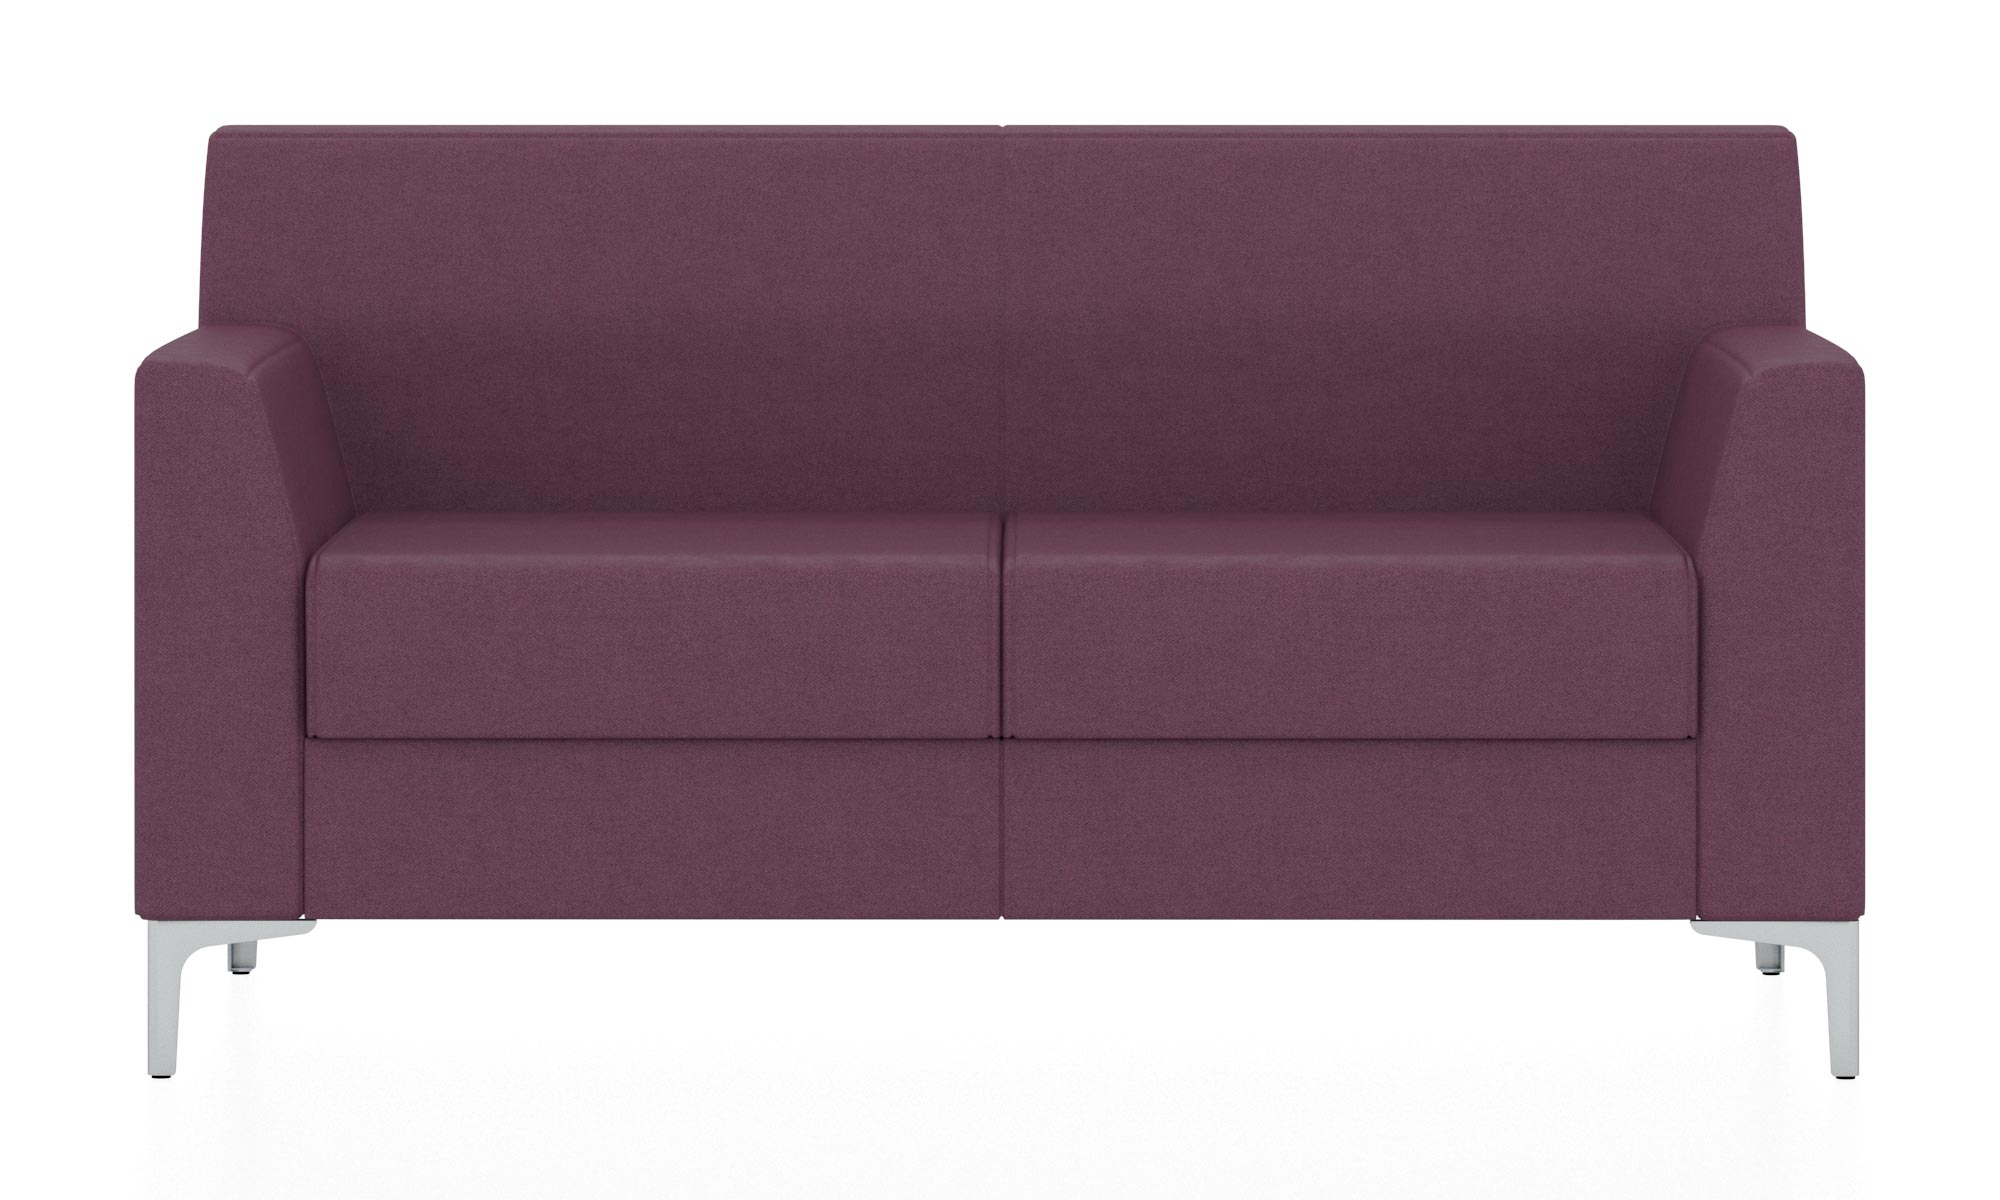 Классический двухместный диван. Обивка из ткани сиреневого цвета (Кардиф 25)